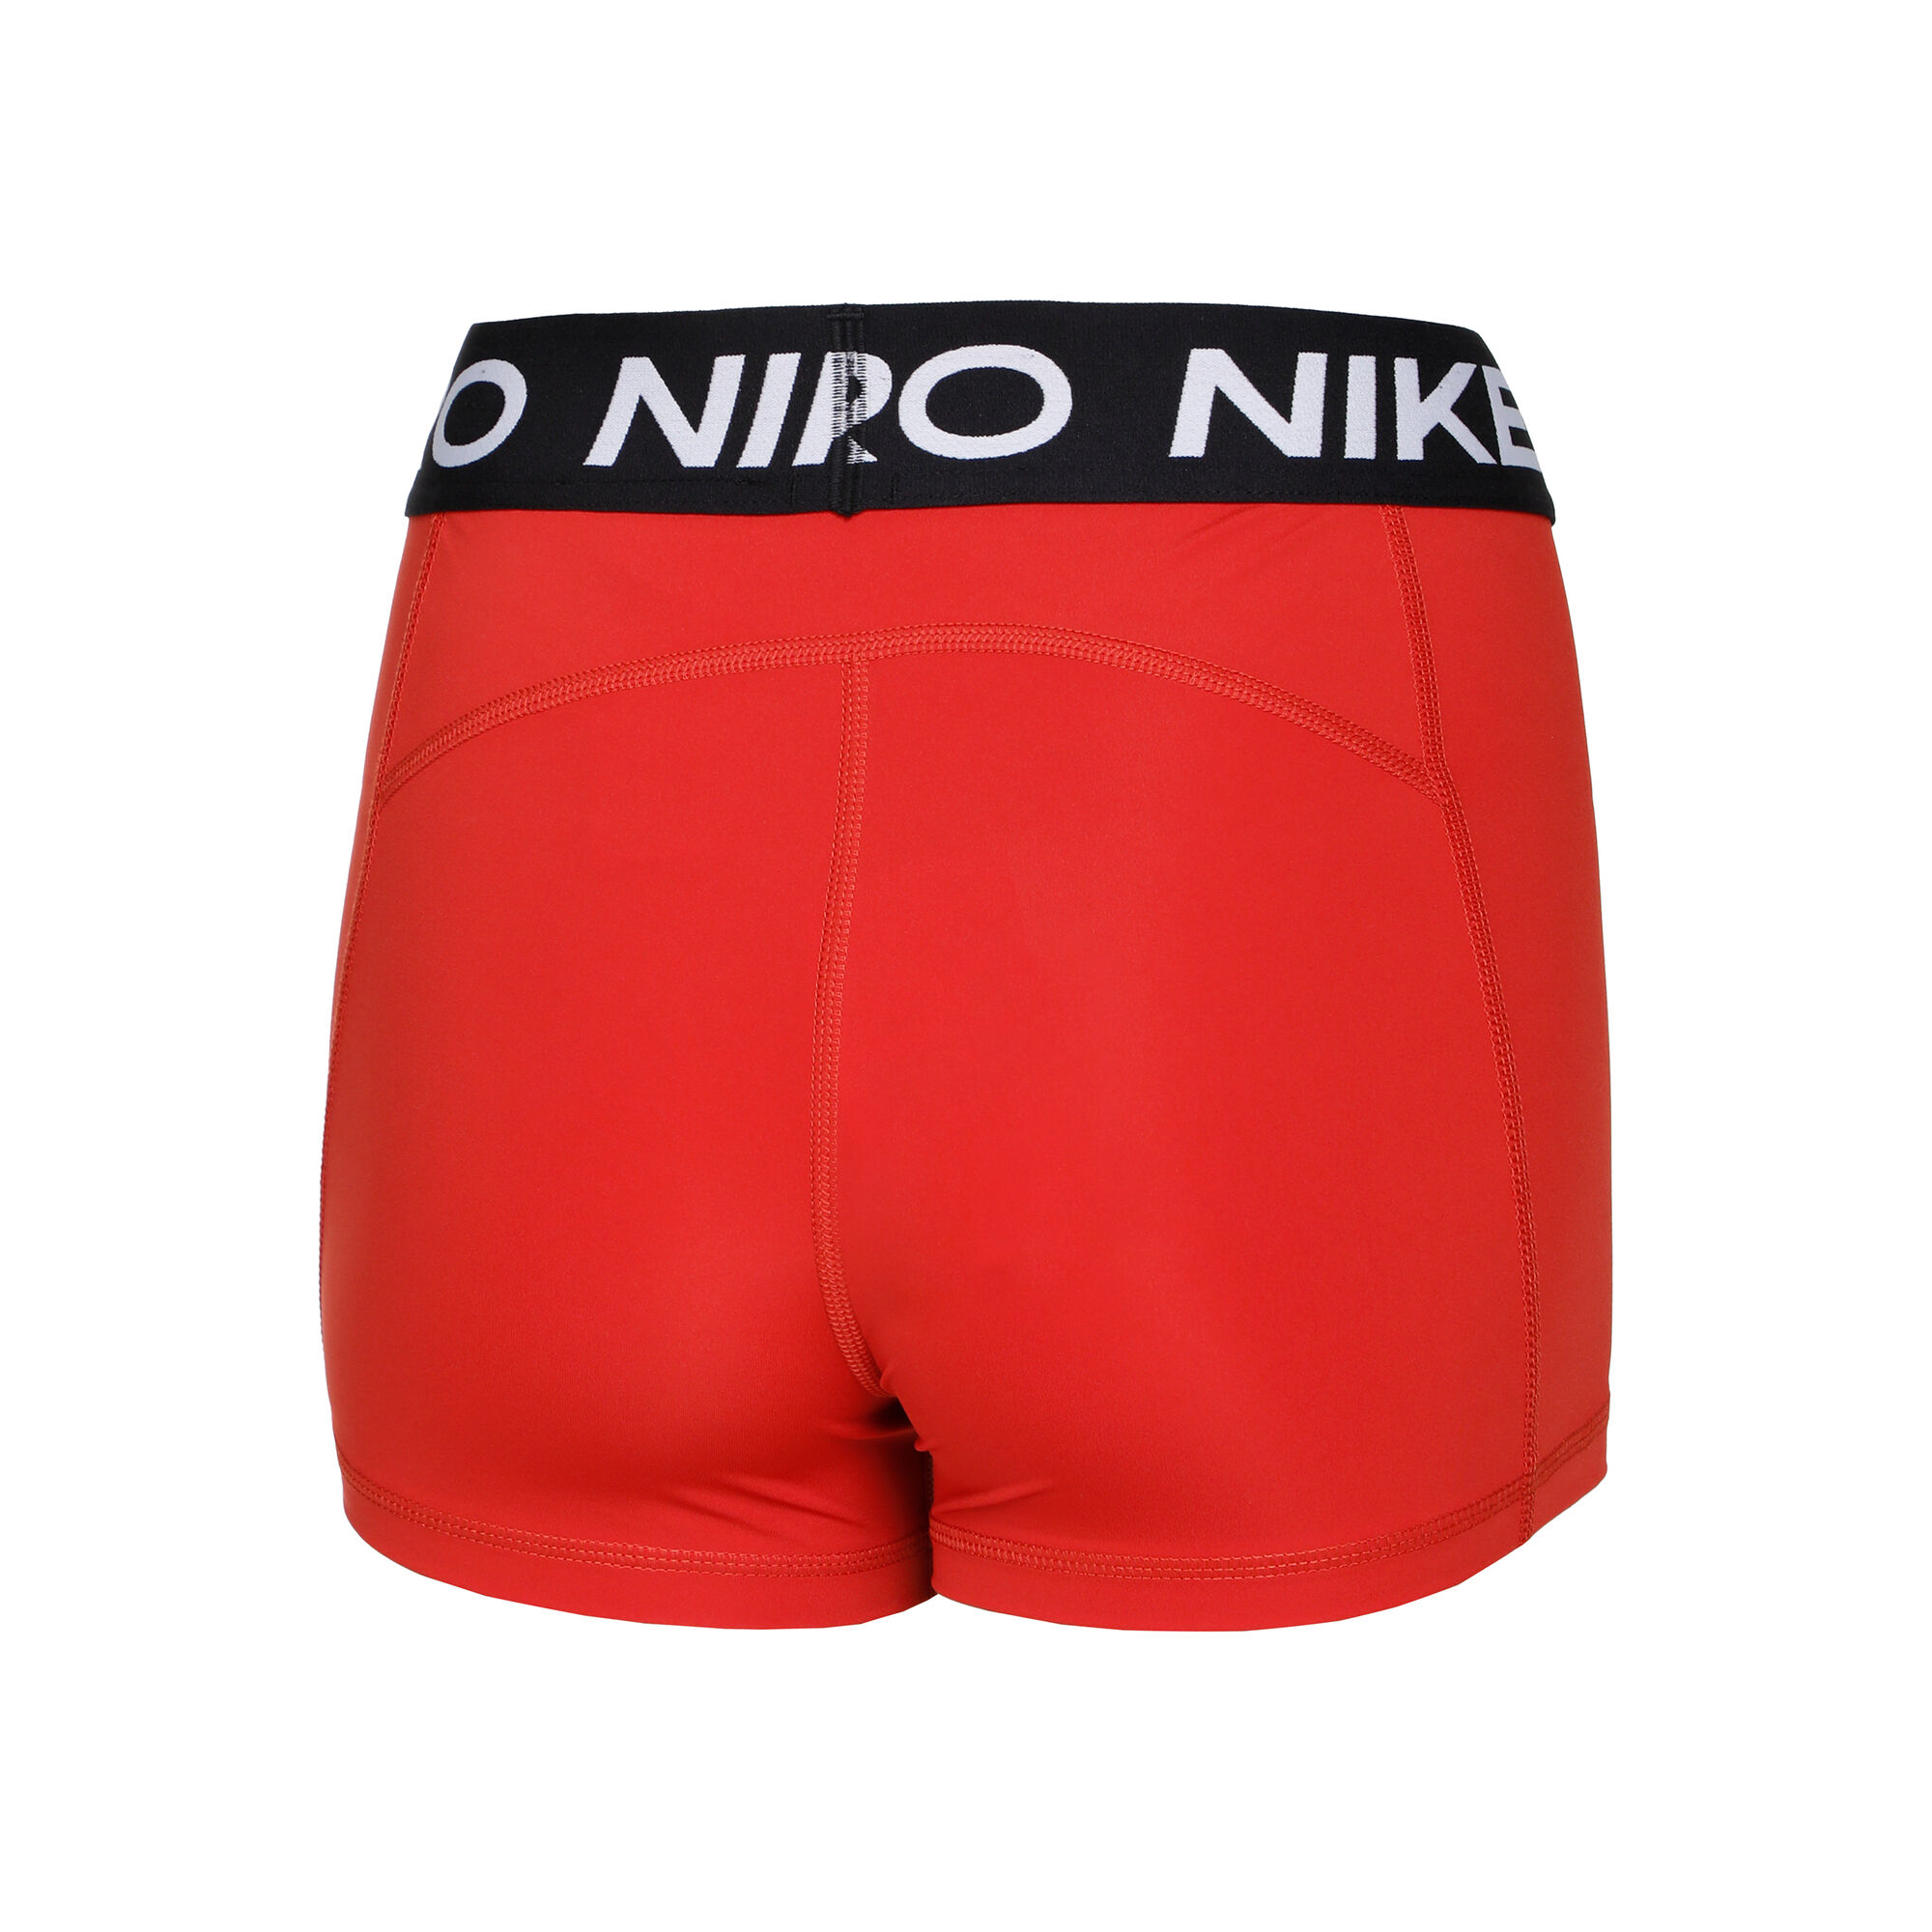 Set of Nike Pro sports bra and shorts (Orange) / S size, Men's